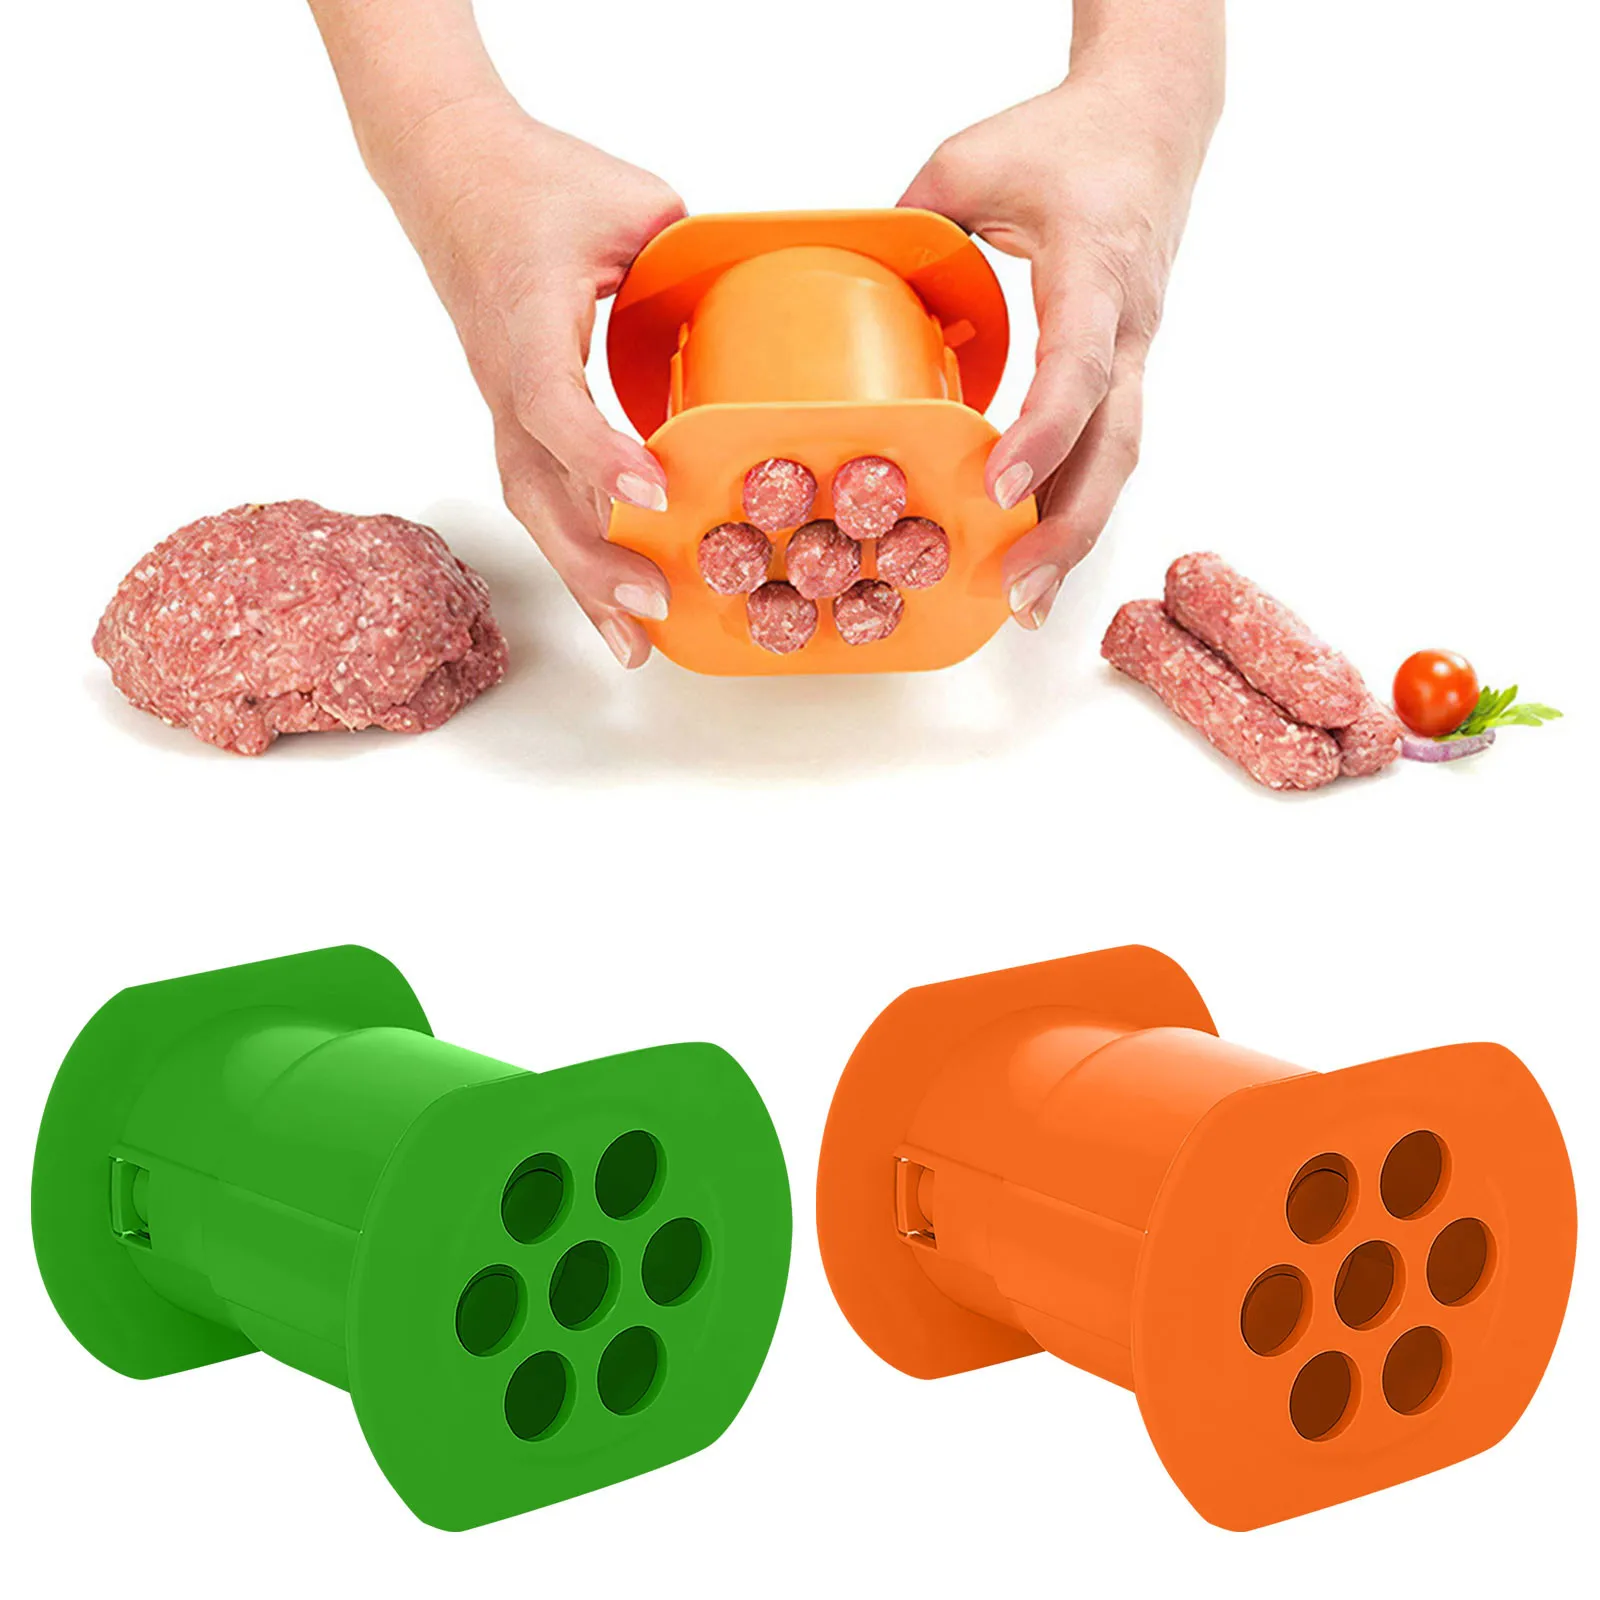 Einer Presse Cevapcici Maker Burger Heißer Hund Fleisch Wurst Kroketten Handgemachte Küche Einfach Kochen Gadget